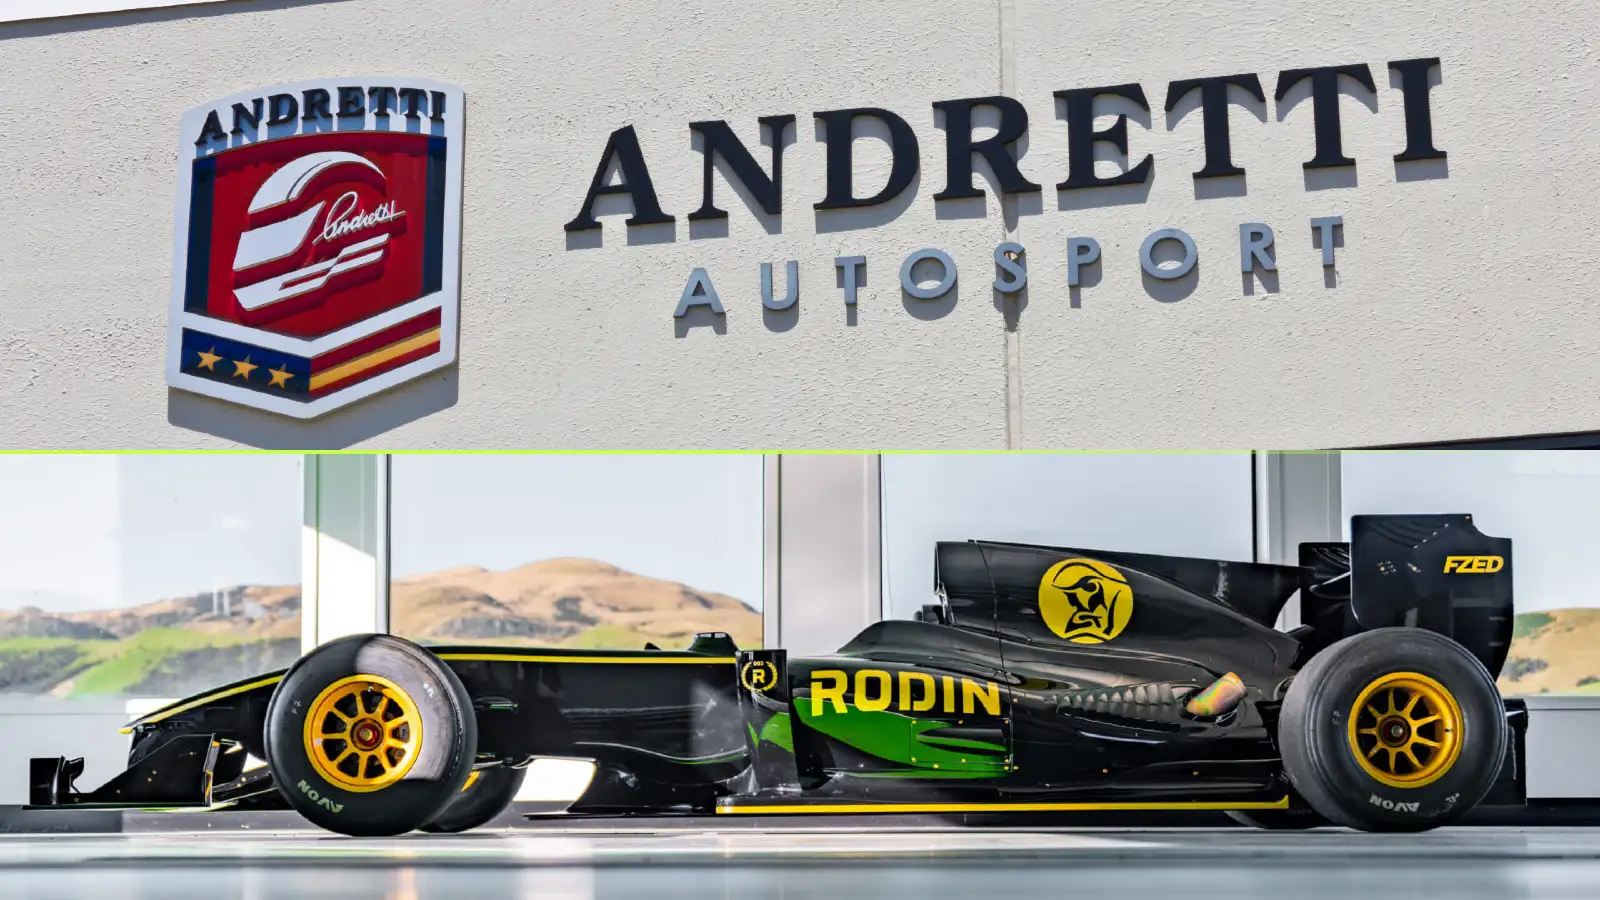 Andretti F1